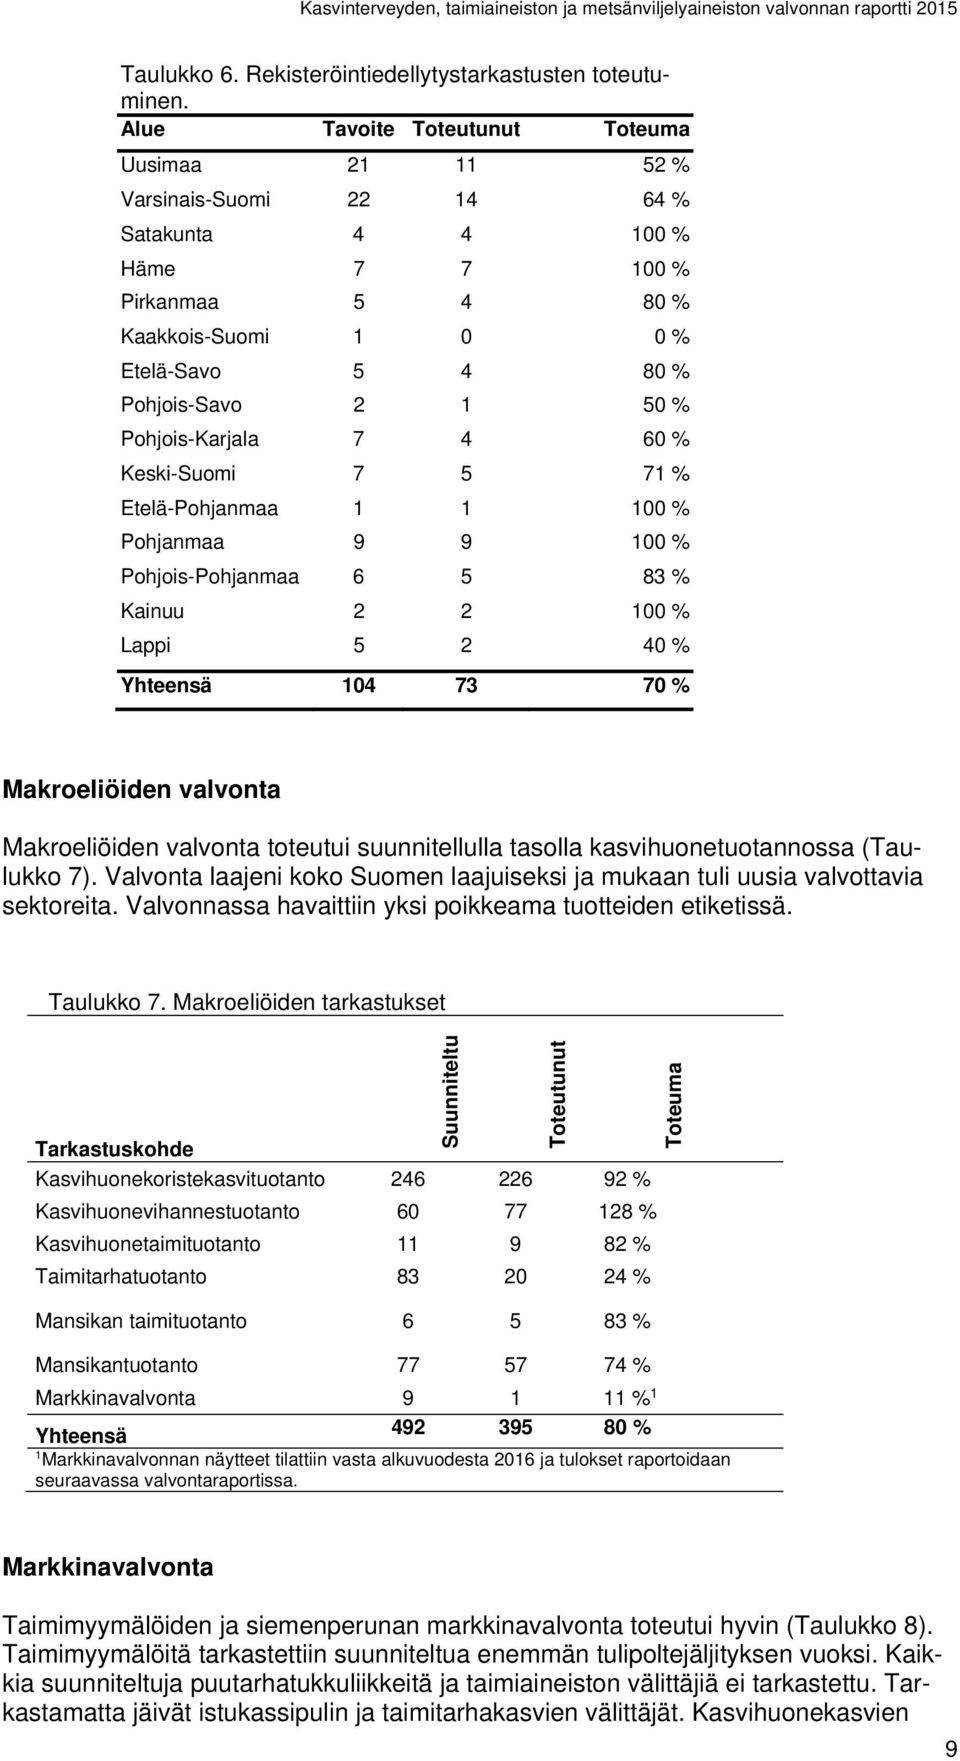 Pohjois-Karjala 7 4 60 % Keski-Suomi 7 5 71 % Etelä-Pohjanmaa 1 1 100 % Pohjanmaa 9 9 100 % Pohjois-Pohjanmaa 6 5 83 % Kainuu 2 2 100 % Lappi 5 2 40 % Yhteensä 104 73 70 % Makroeliöiden valvonta